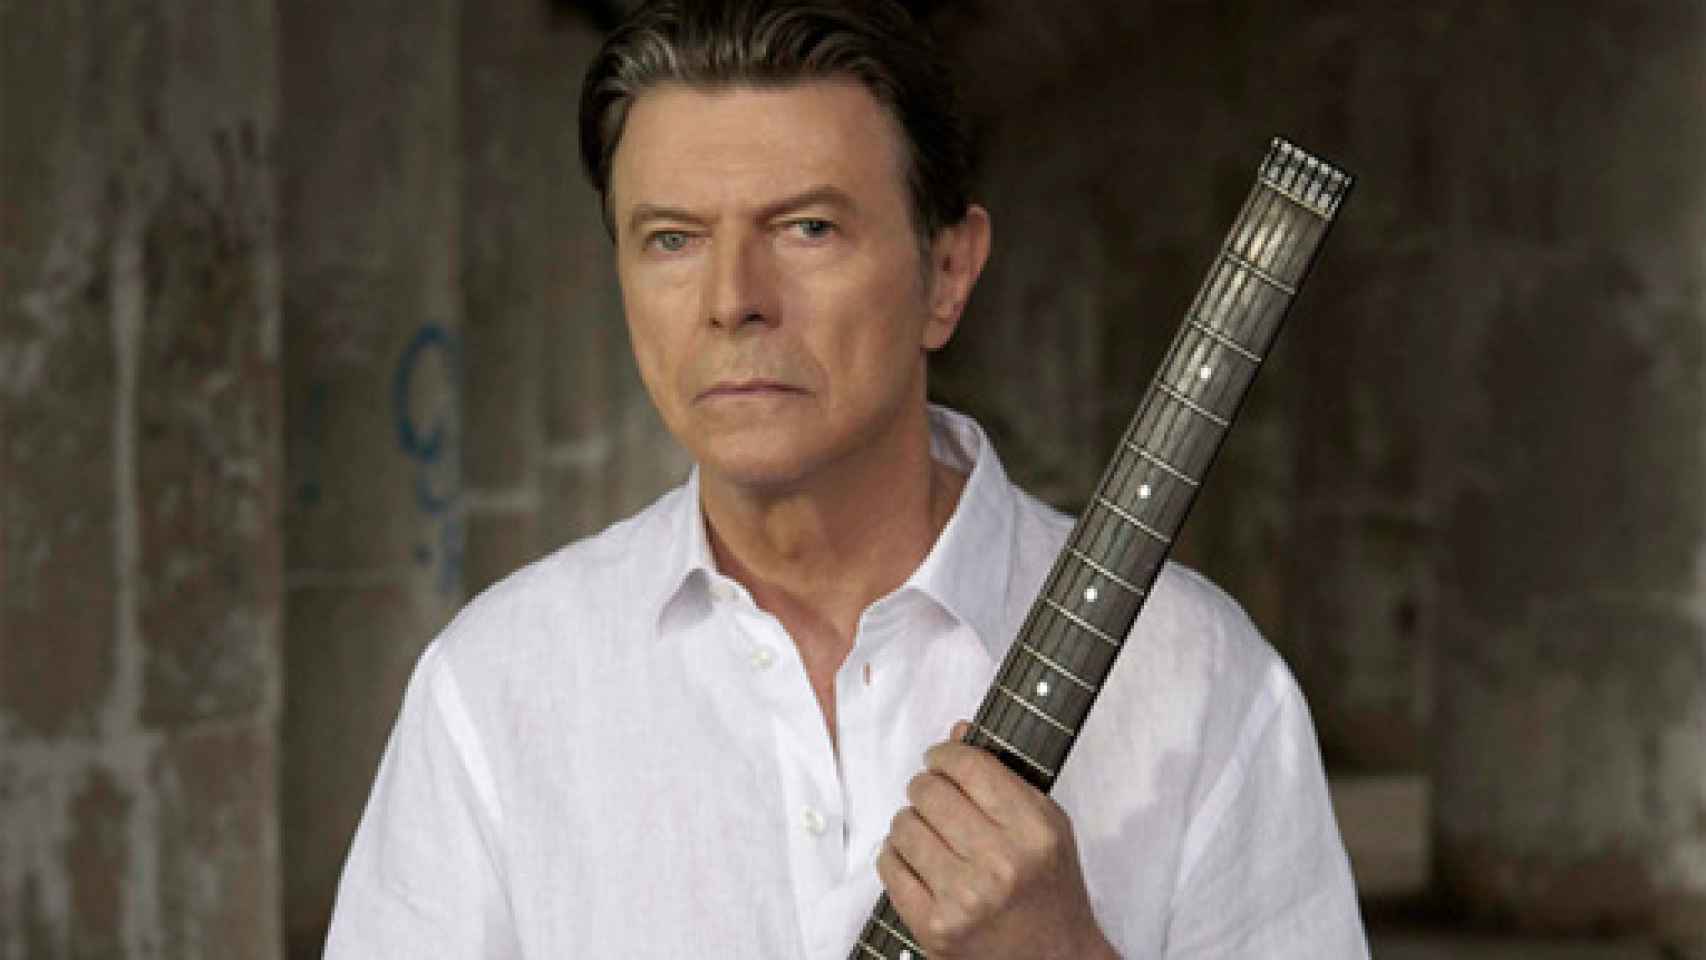 Image: El regreso de David Bowie y U2